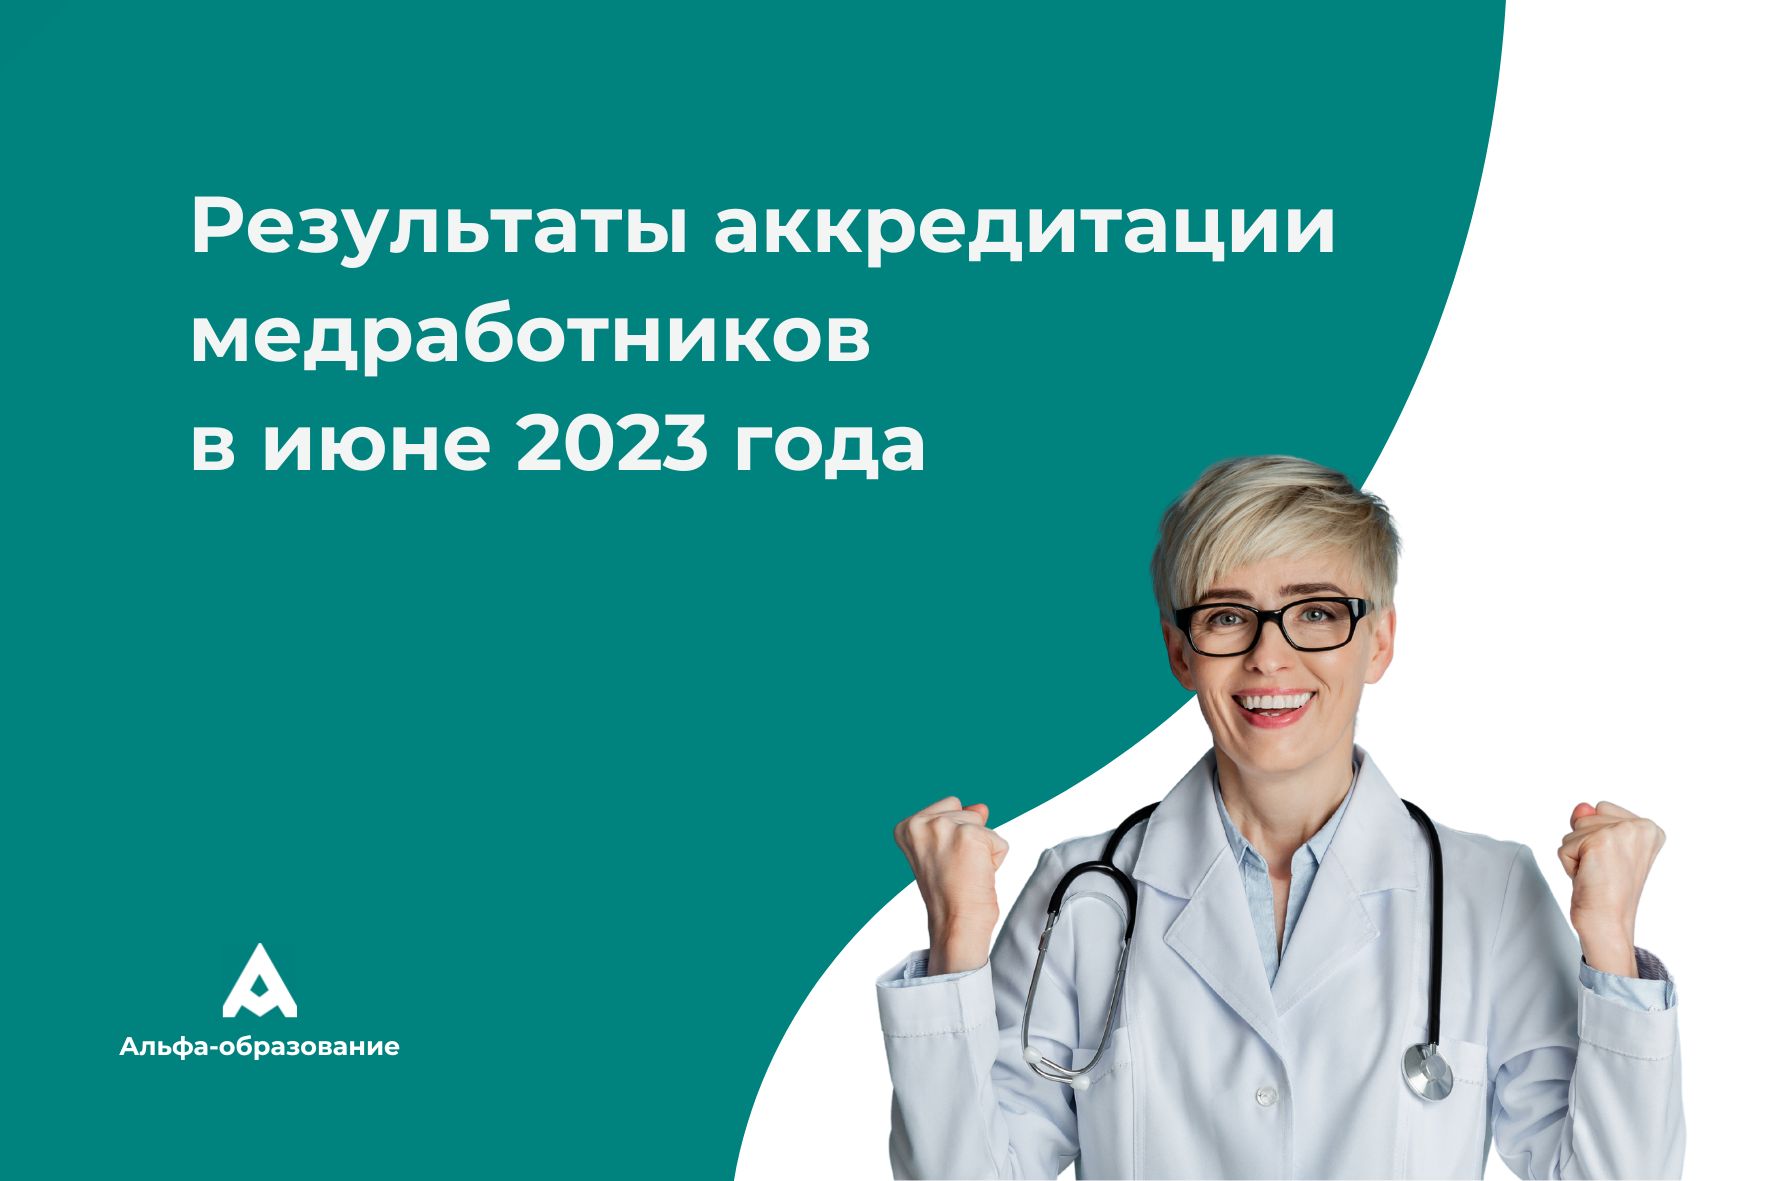 Протокол аккредитации медицинских работников в 2024. Аккредитация медработников. Аккредитация медицинских работников в 2023. Портфолио для аккредитации медицинских работников в 2023 году. Аккредитации медицинских работников 24 года.